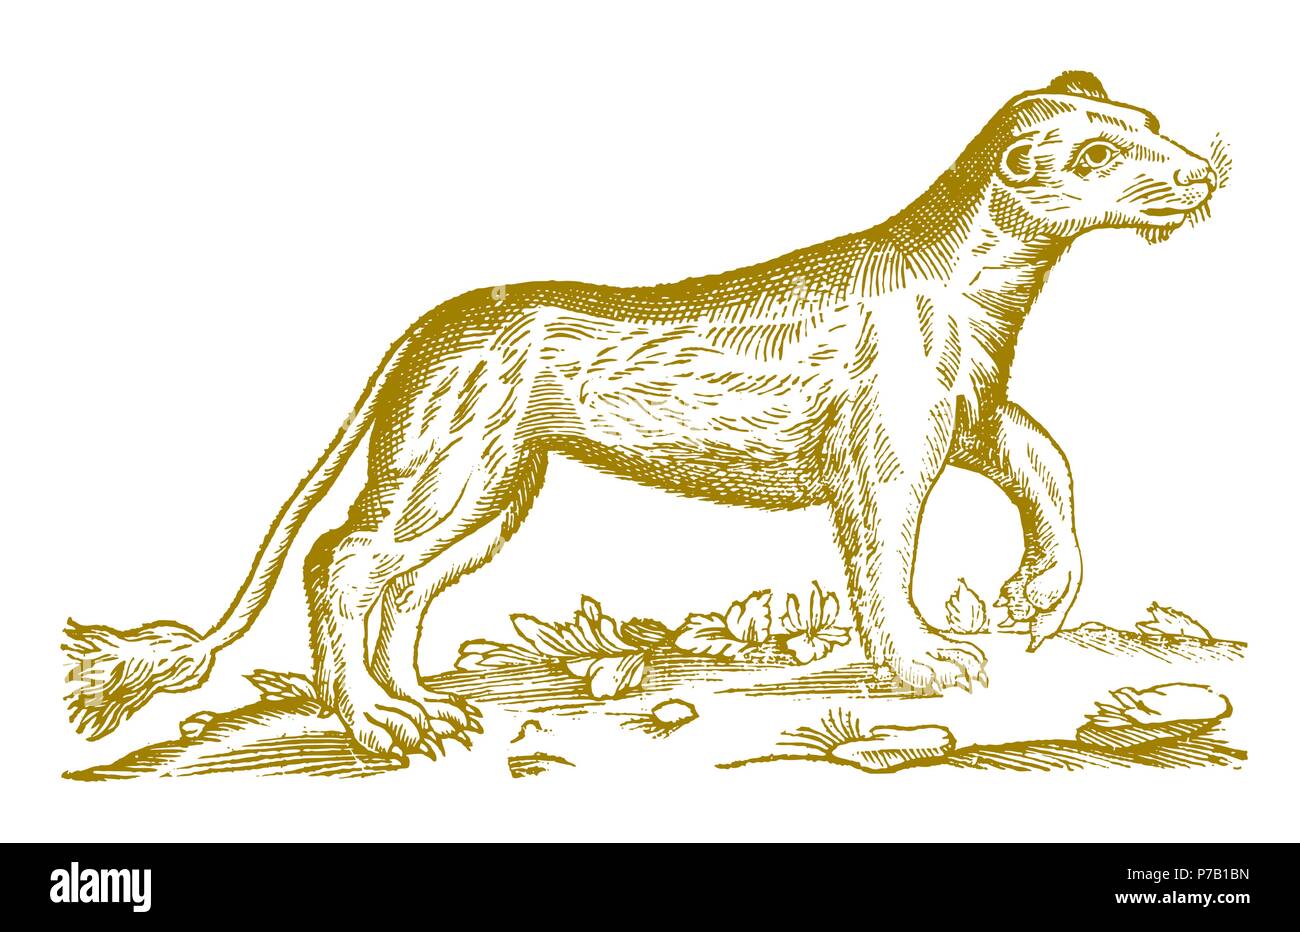 Femmina (lion panthera leo) alzando la zampa. Illustrazione dopo una storica incisione xilografia dal XVII secolo Illustrazione Vettoriale